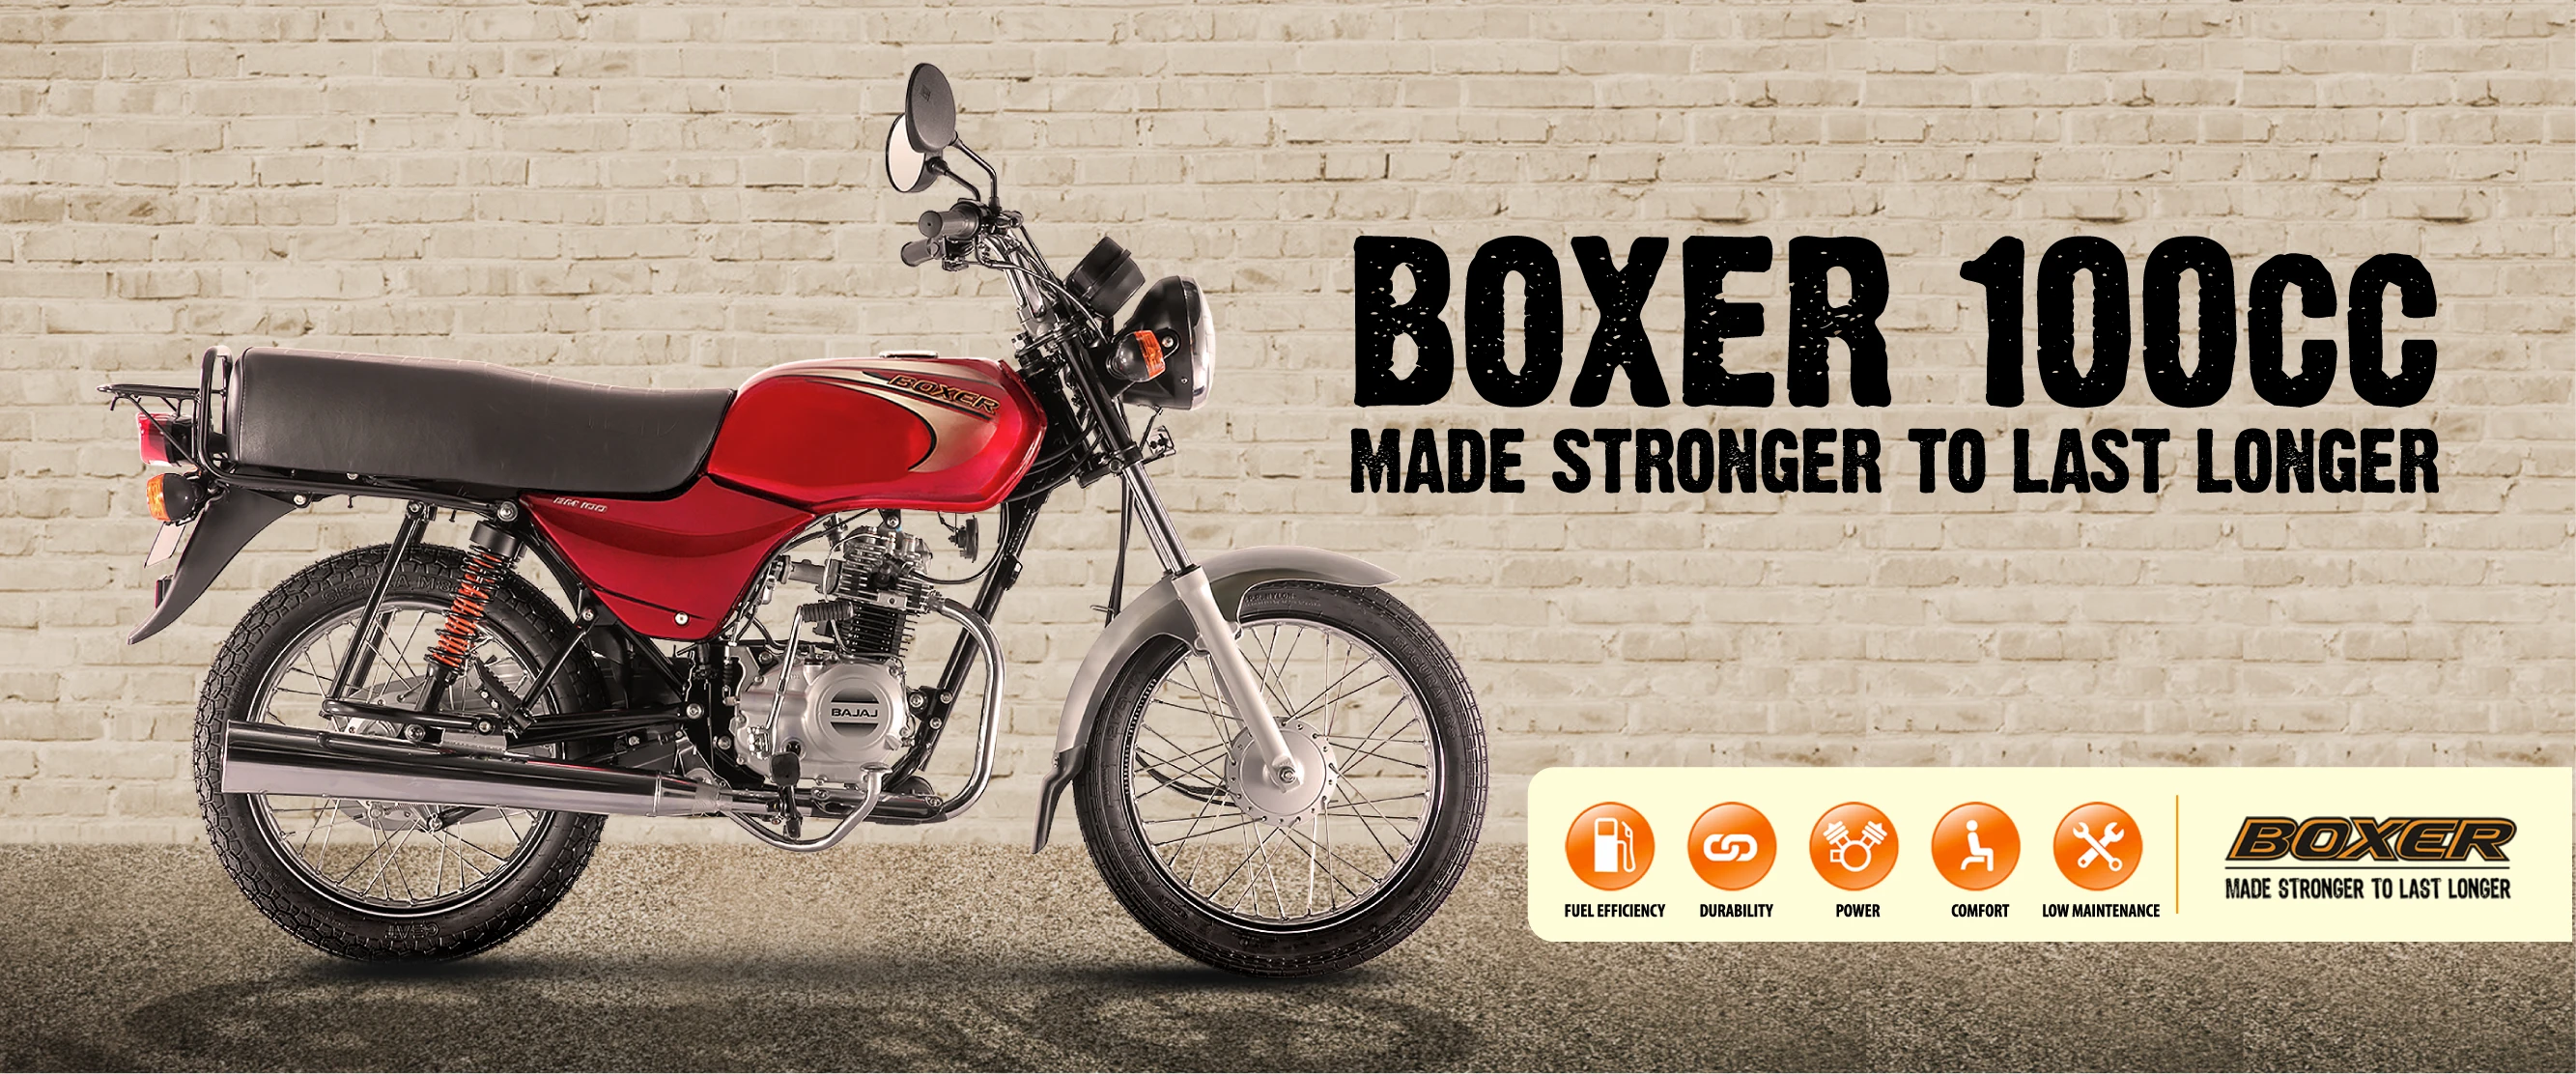 Boxer 100cc Rest of africa ENG Desktop - 1920x800-01